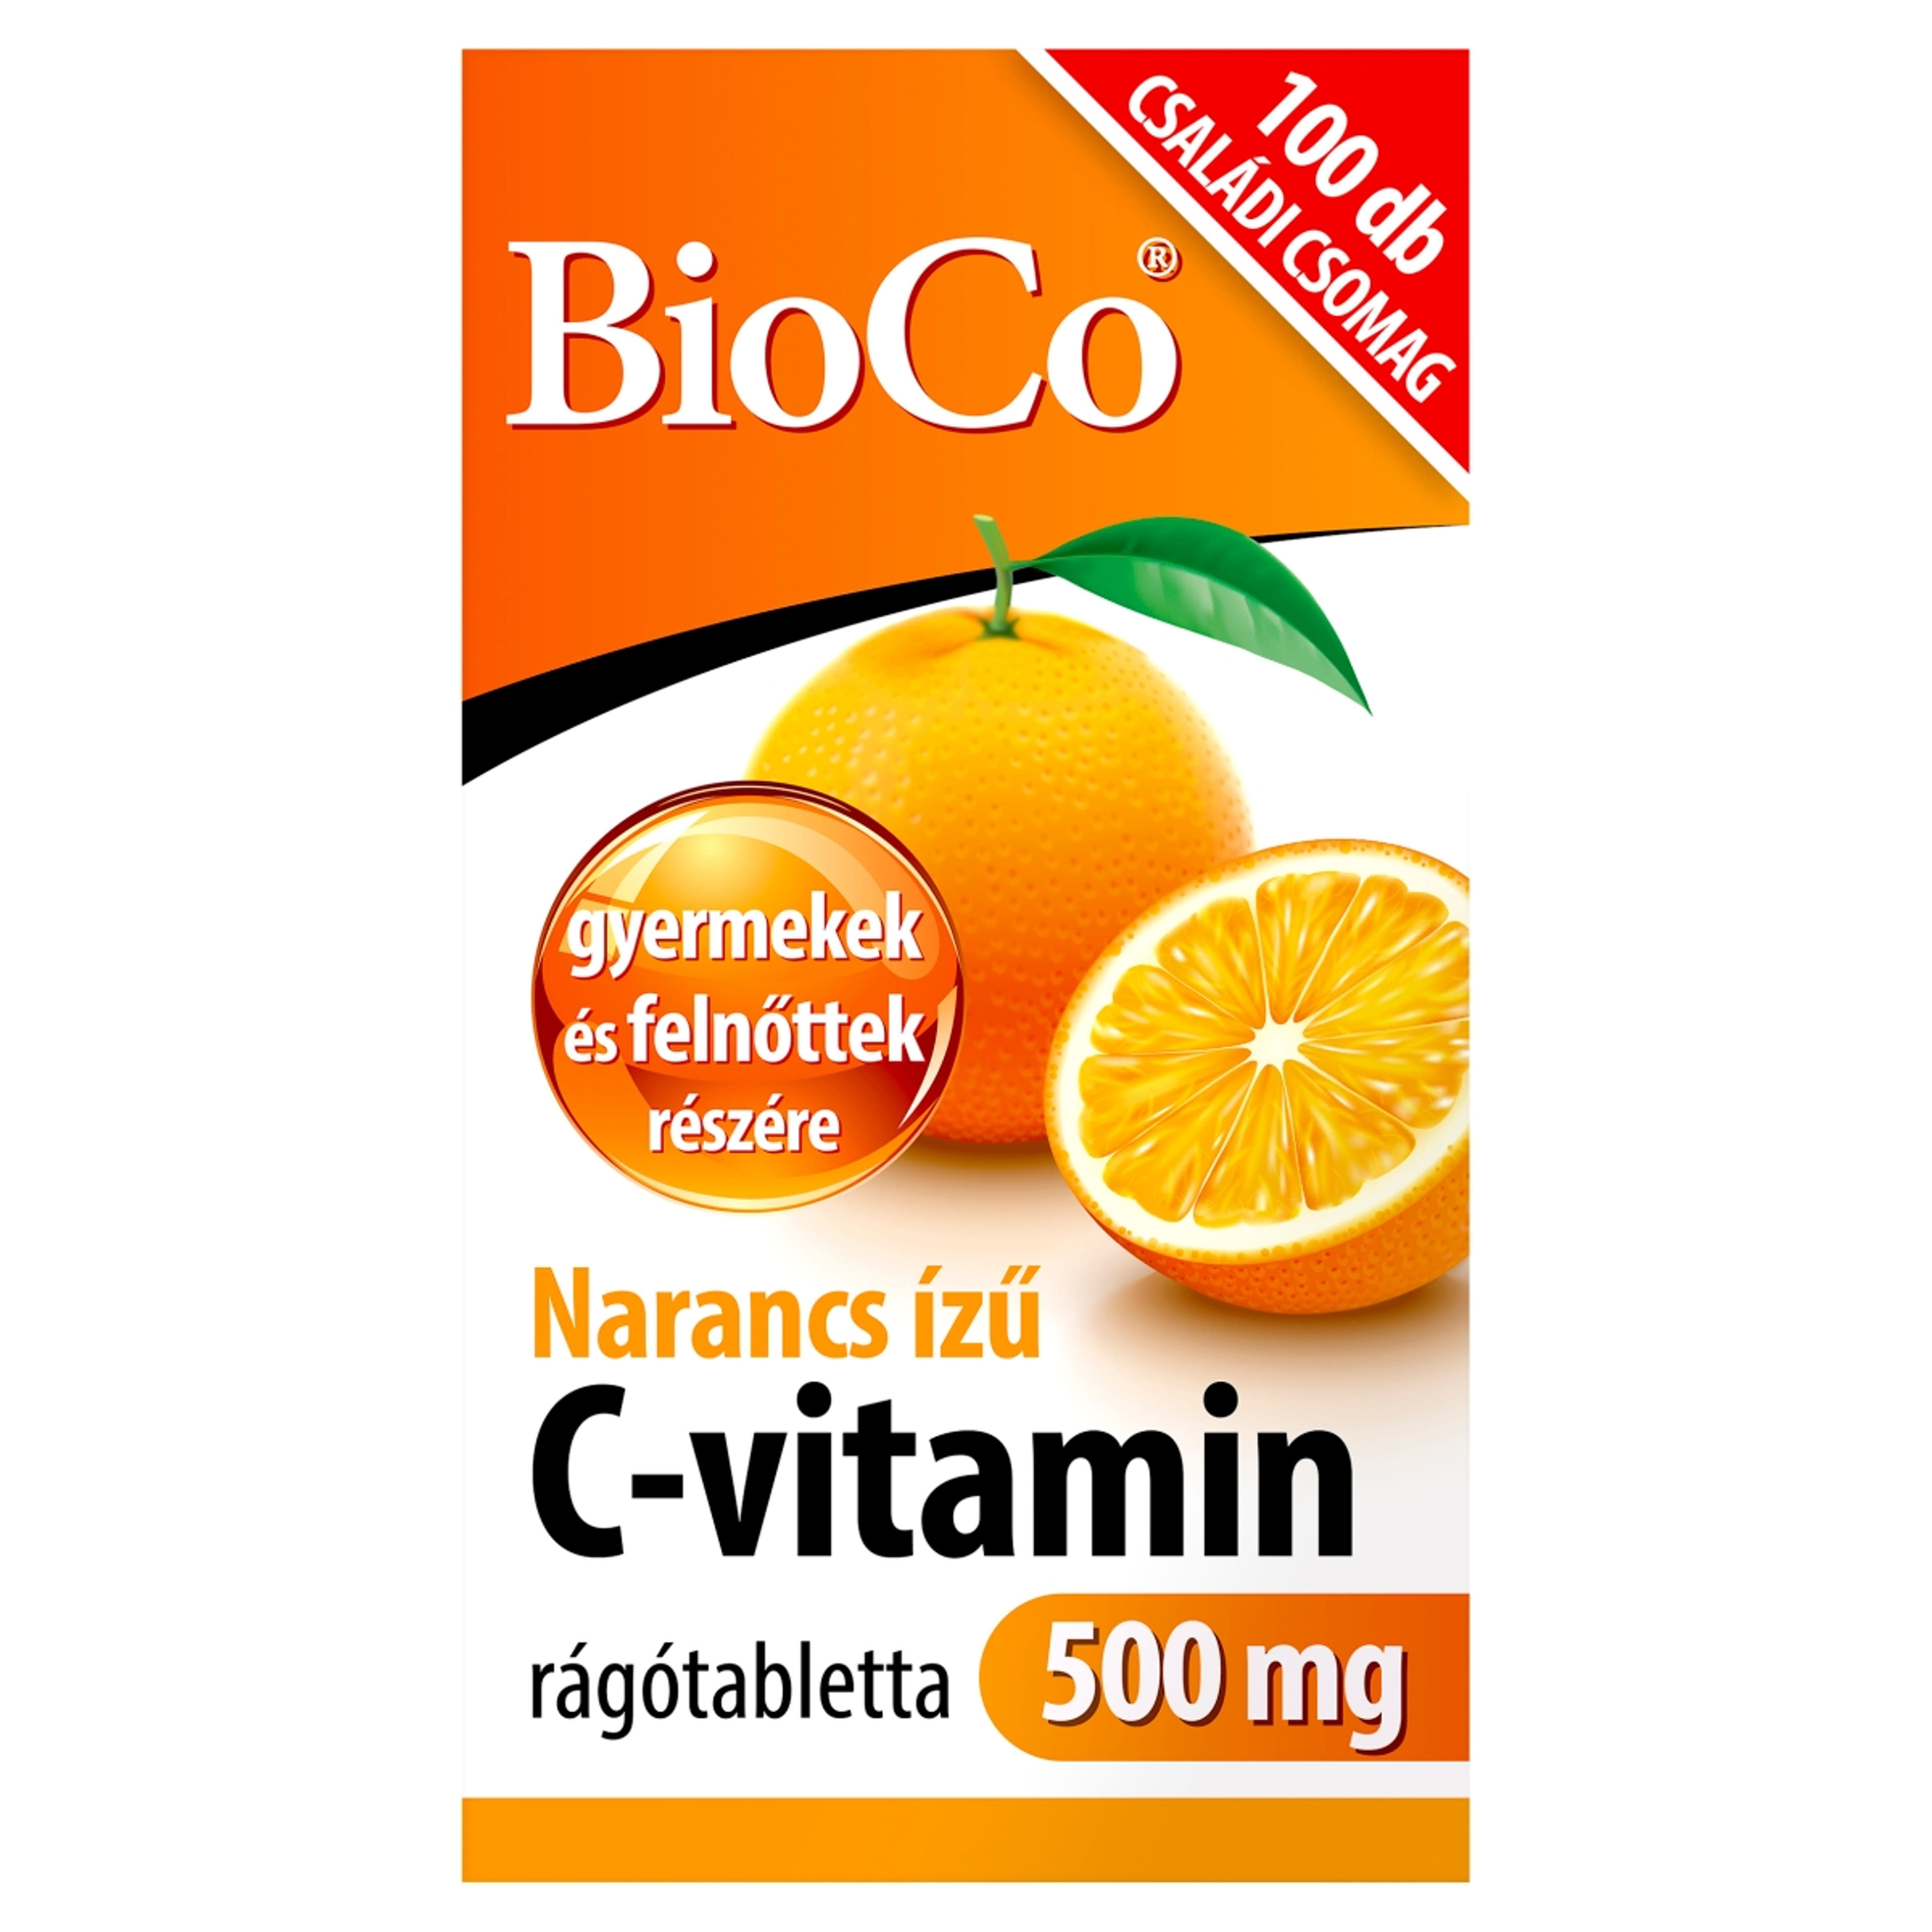 Bioco narancs ízű C-vitamin 500 mg rágótabletta - 100 db